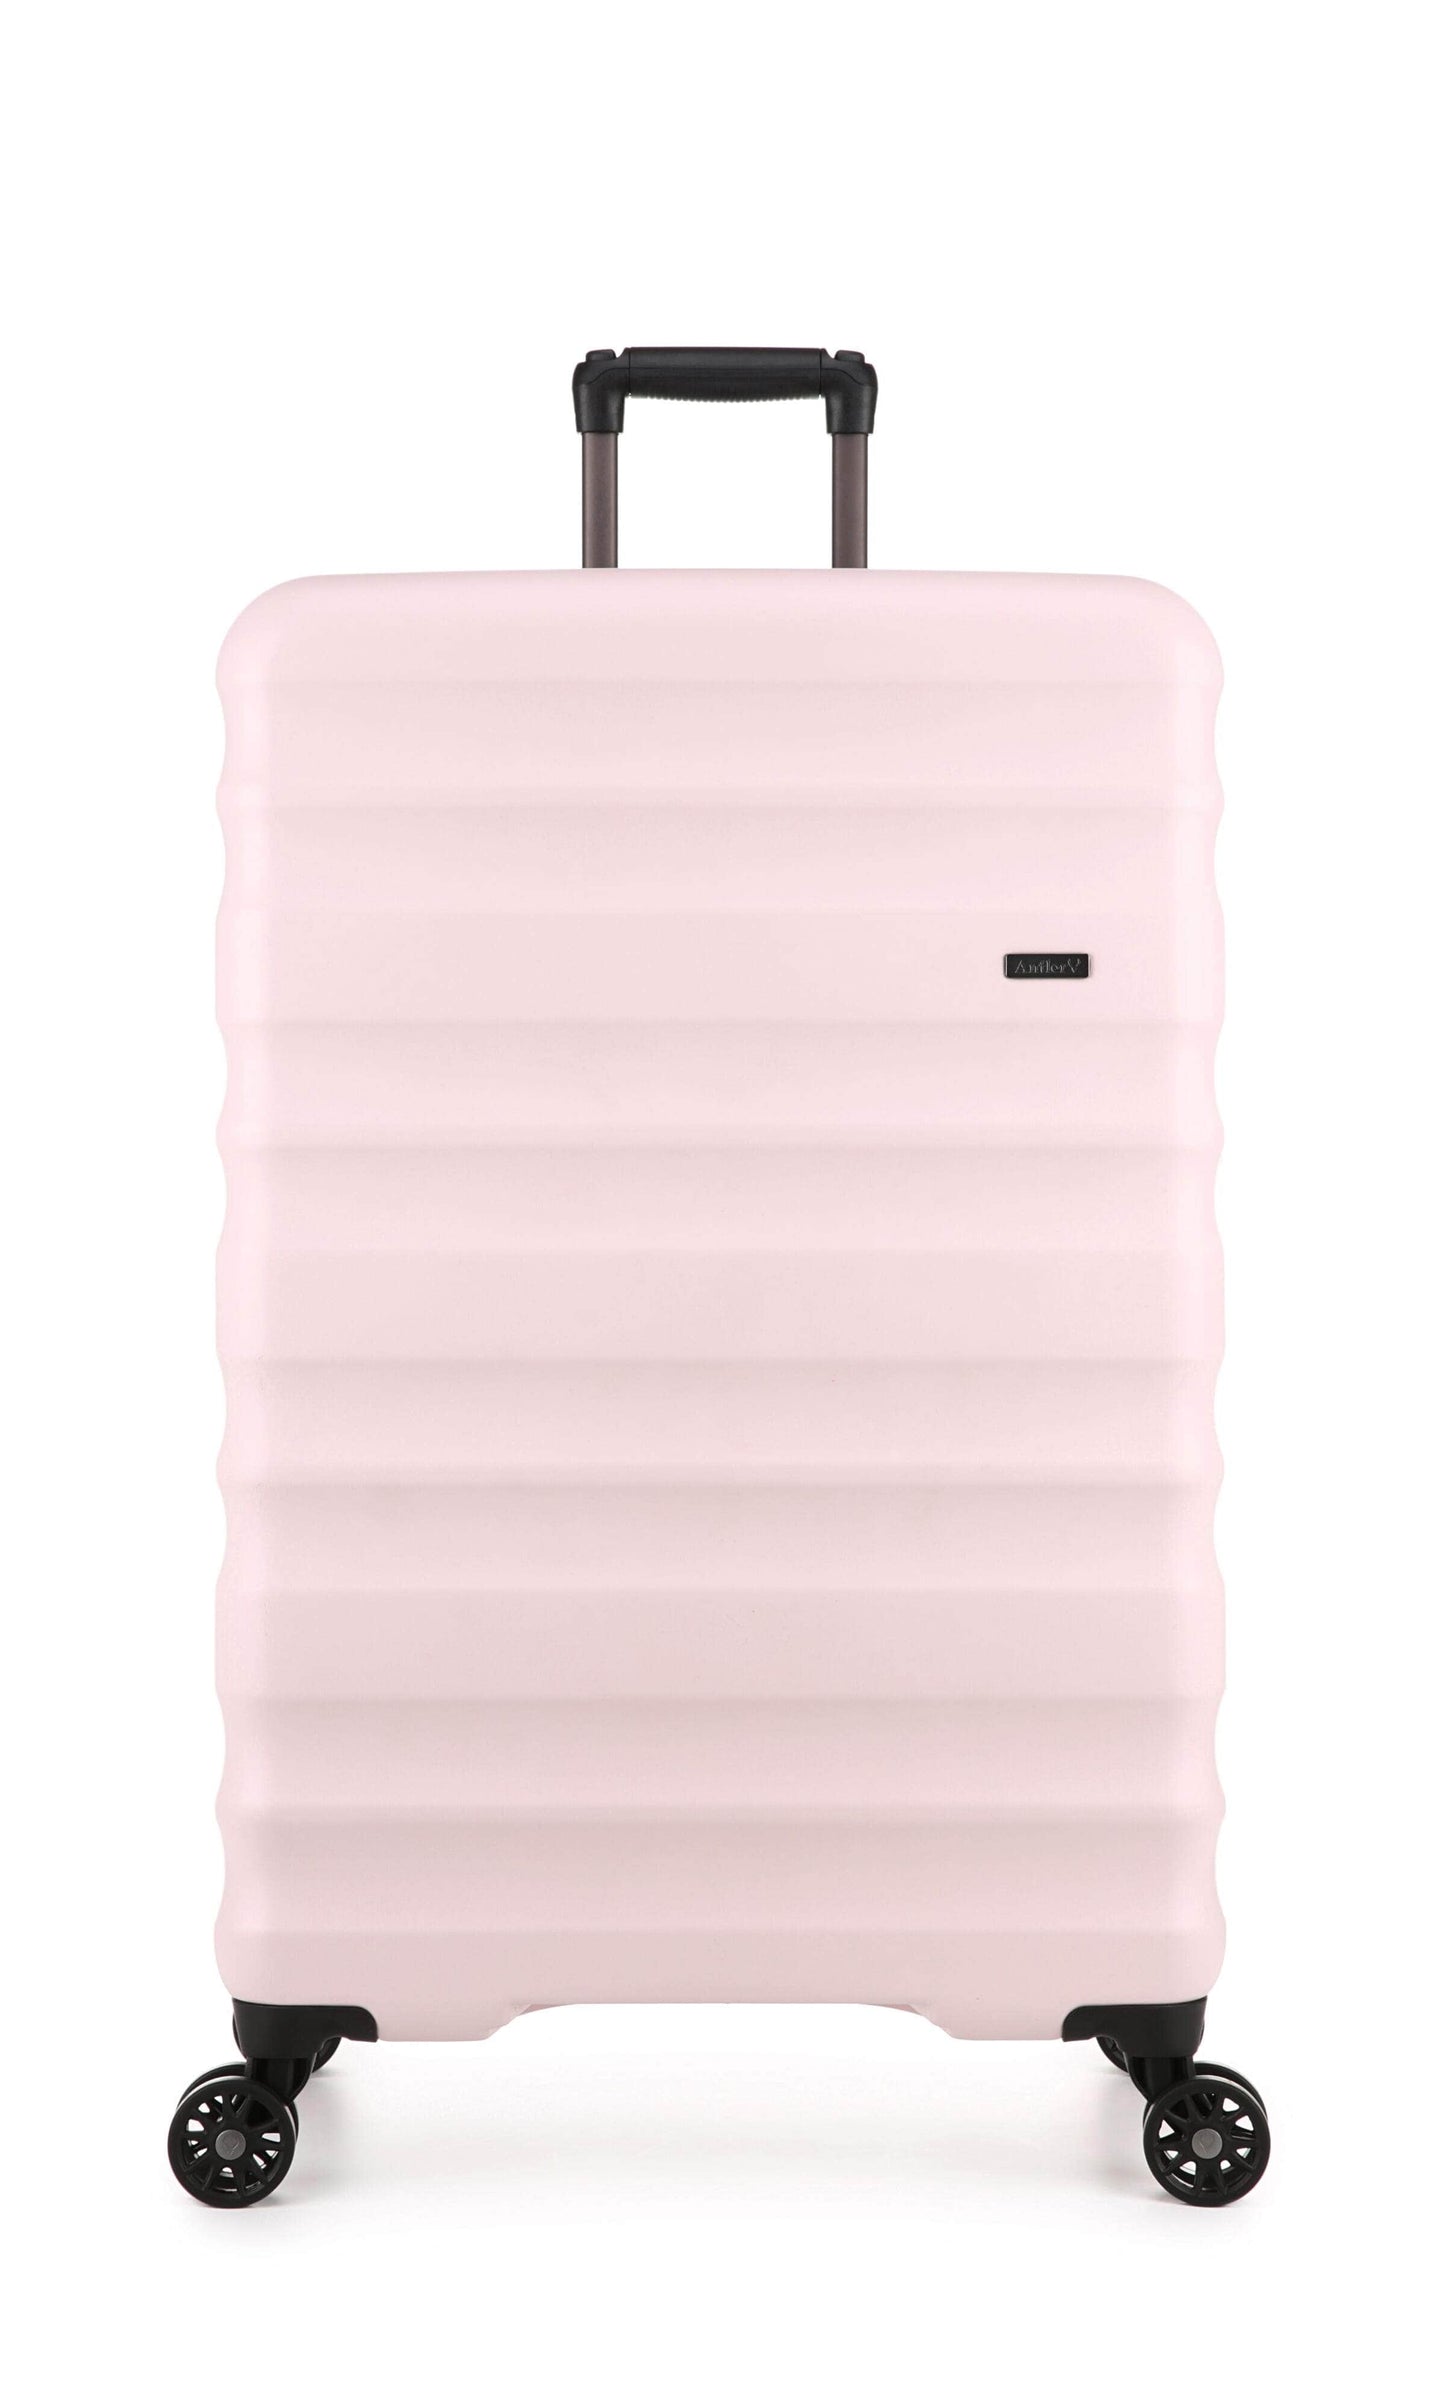 Antler Luggage -  Clifton large in blush - Hard Suitcases Clifton Large Suitcase Blush | Hard Suitcase | Antler UK